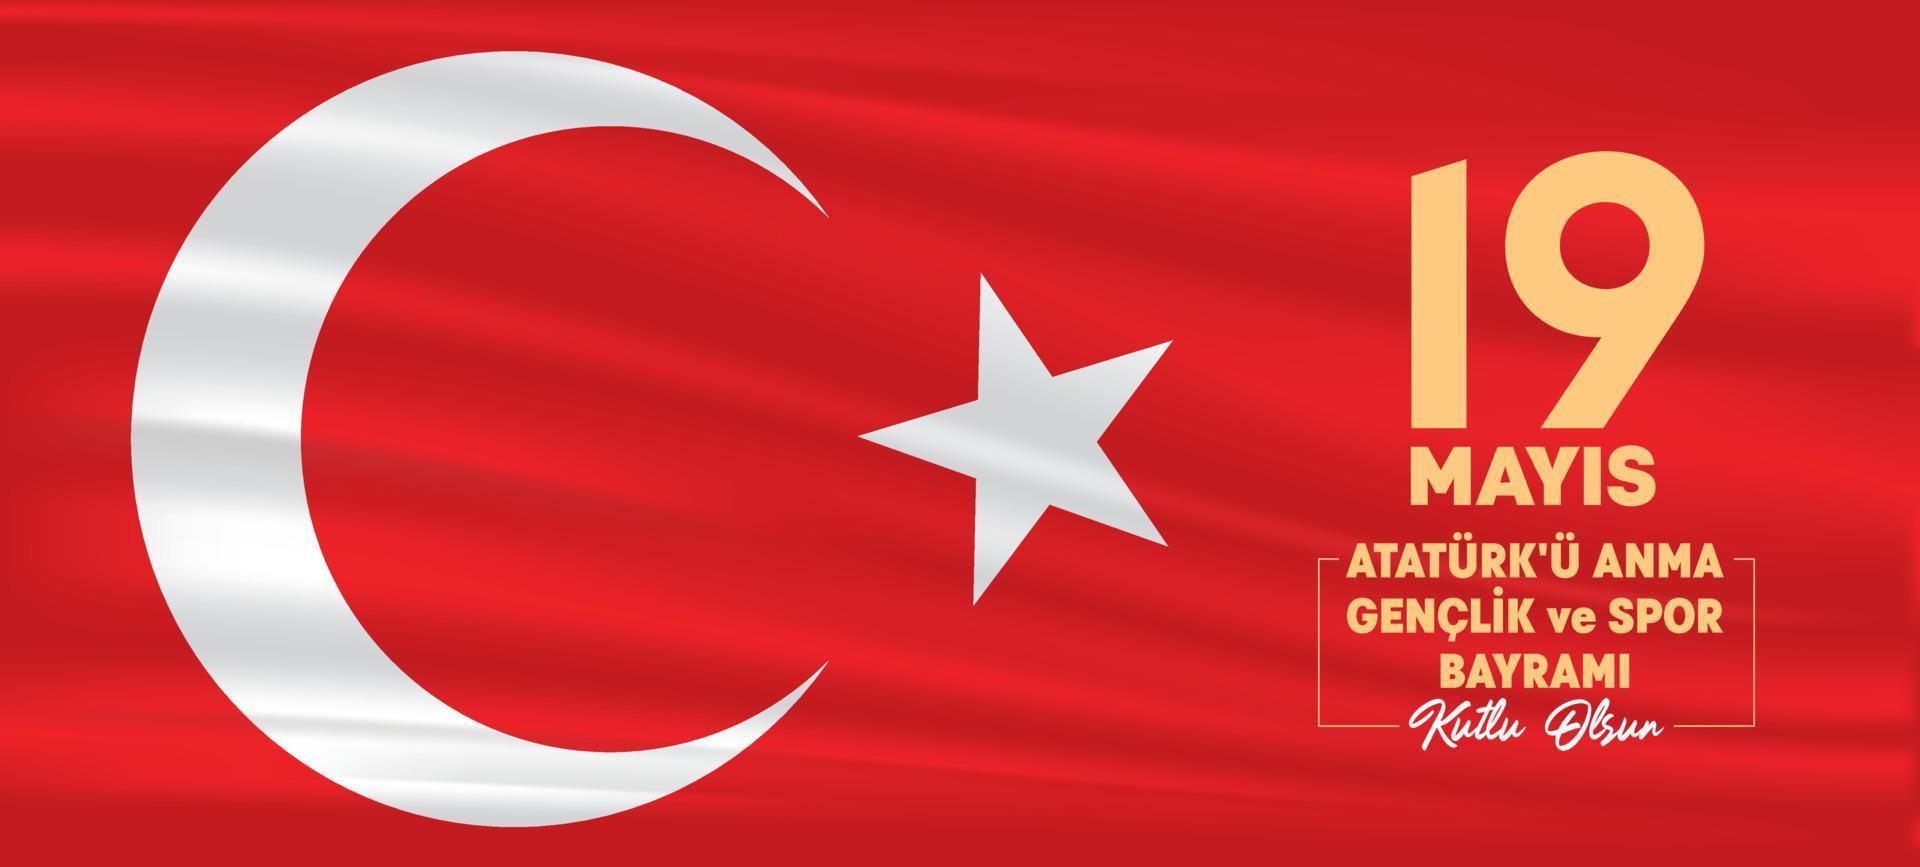 Vektorillustration der türkischen Flagge. 19. mai 1919 fröhliches atatürk-gedenken, jugend- und sporttag, botschaft. Jugendurlaub. Banner-Design. vektor